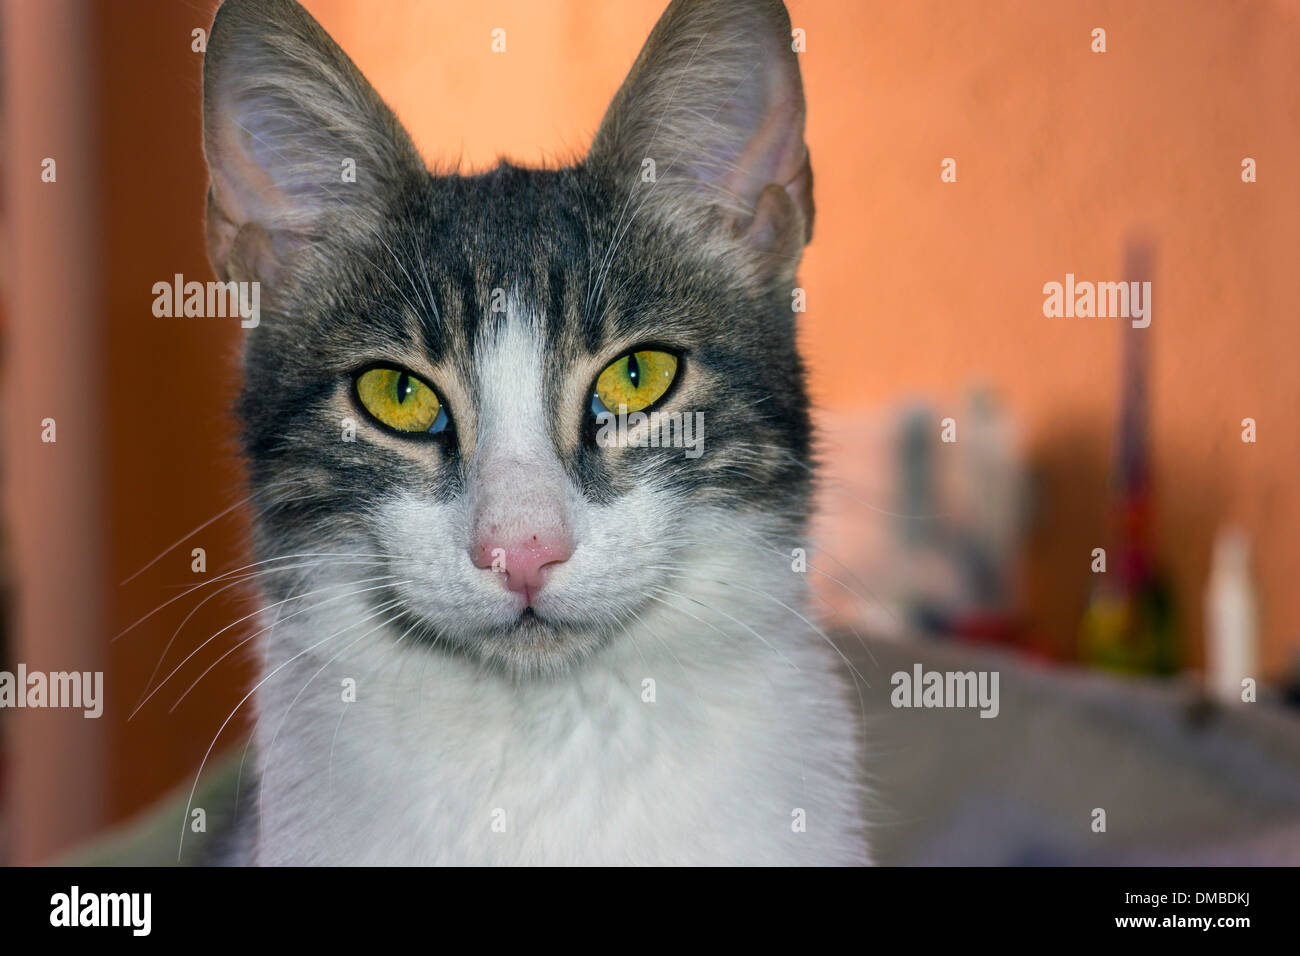 Braune und weiße Katze mit gelben Augen und großen Ohren, Blick in die  Kamera Stockfotografie - Alamy